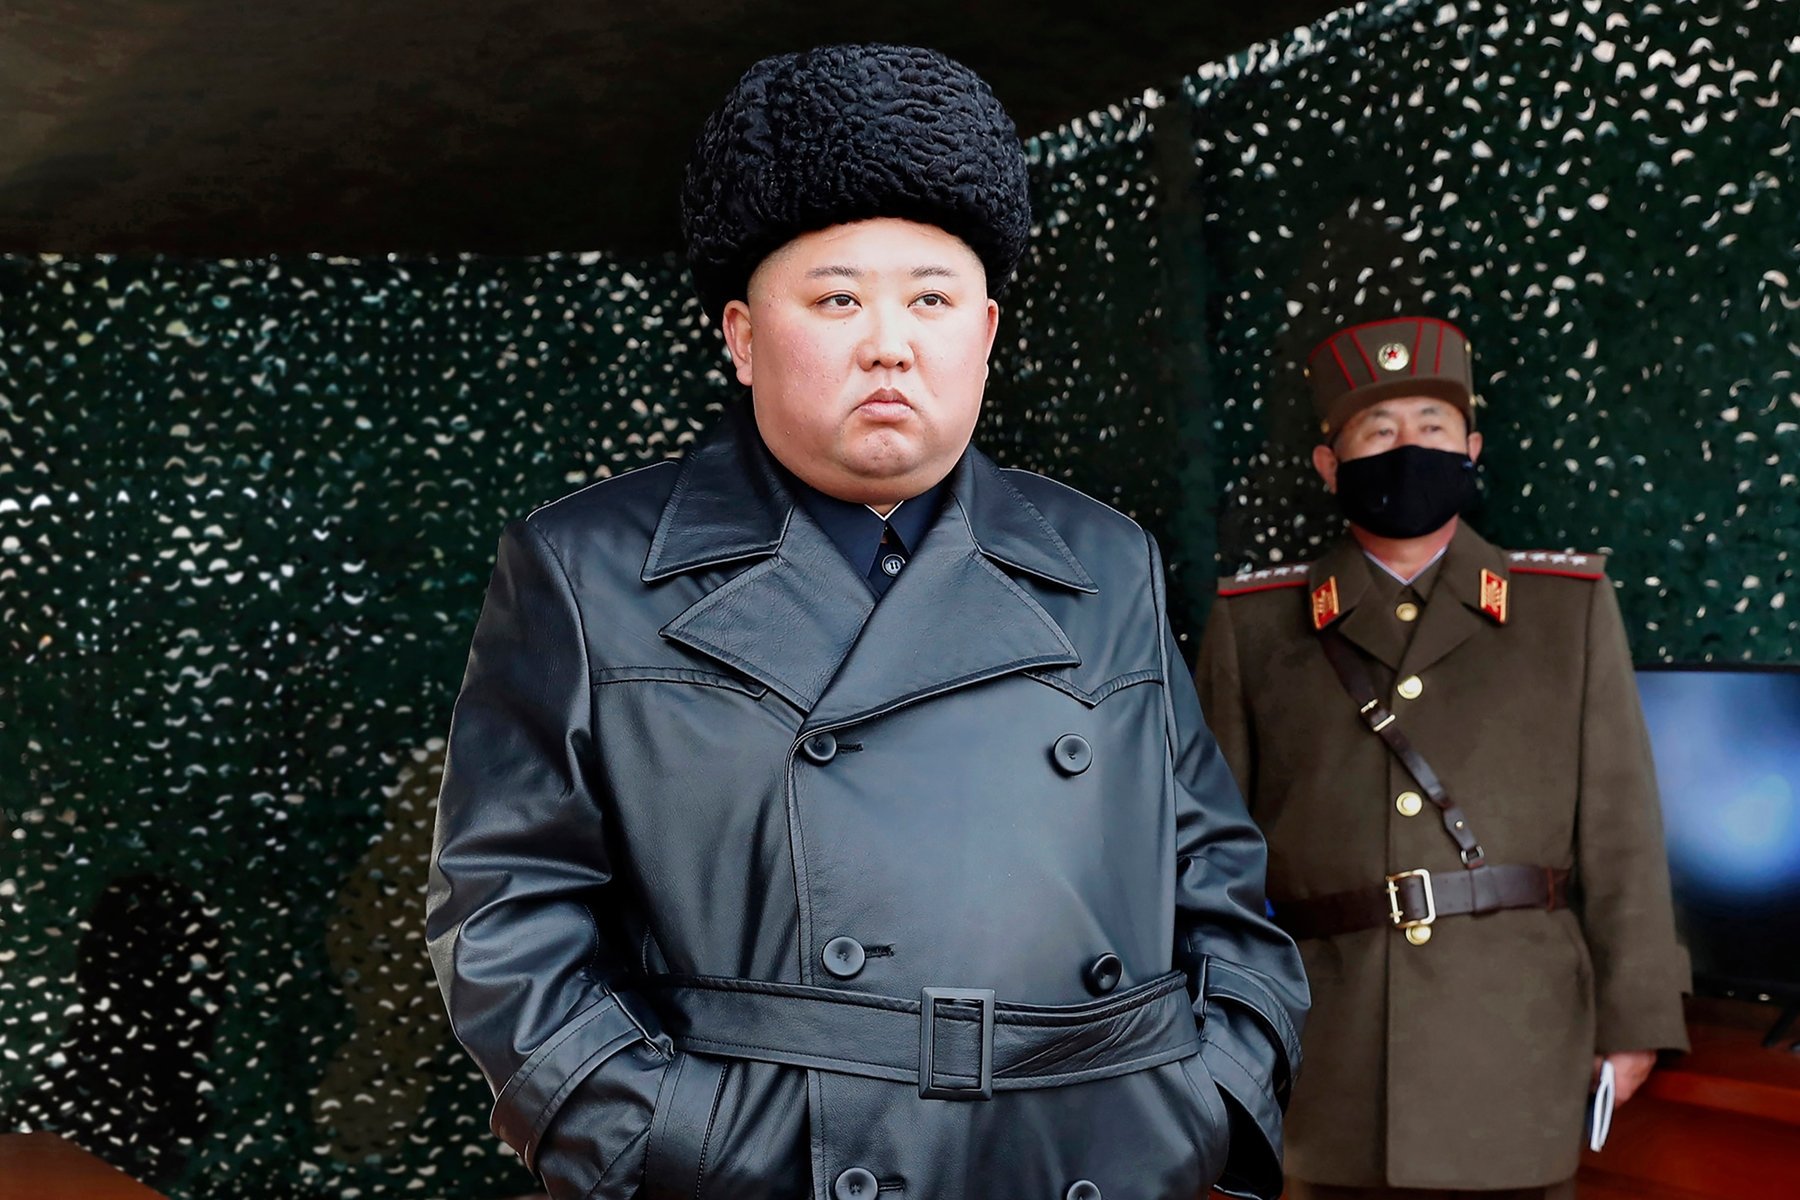 Kuzey Kore den ceket giyme yasağı!